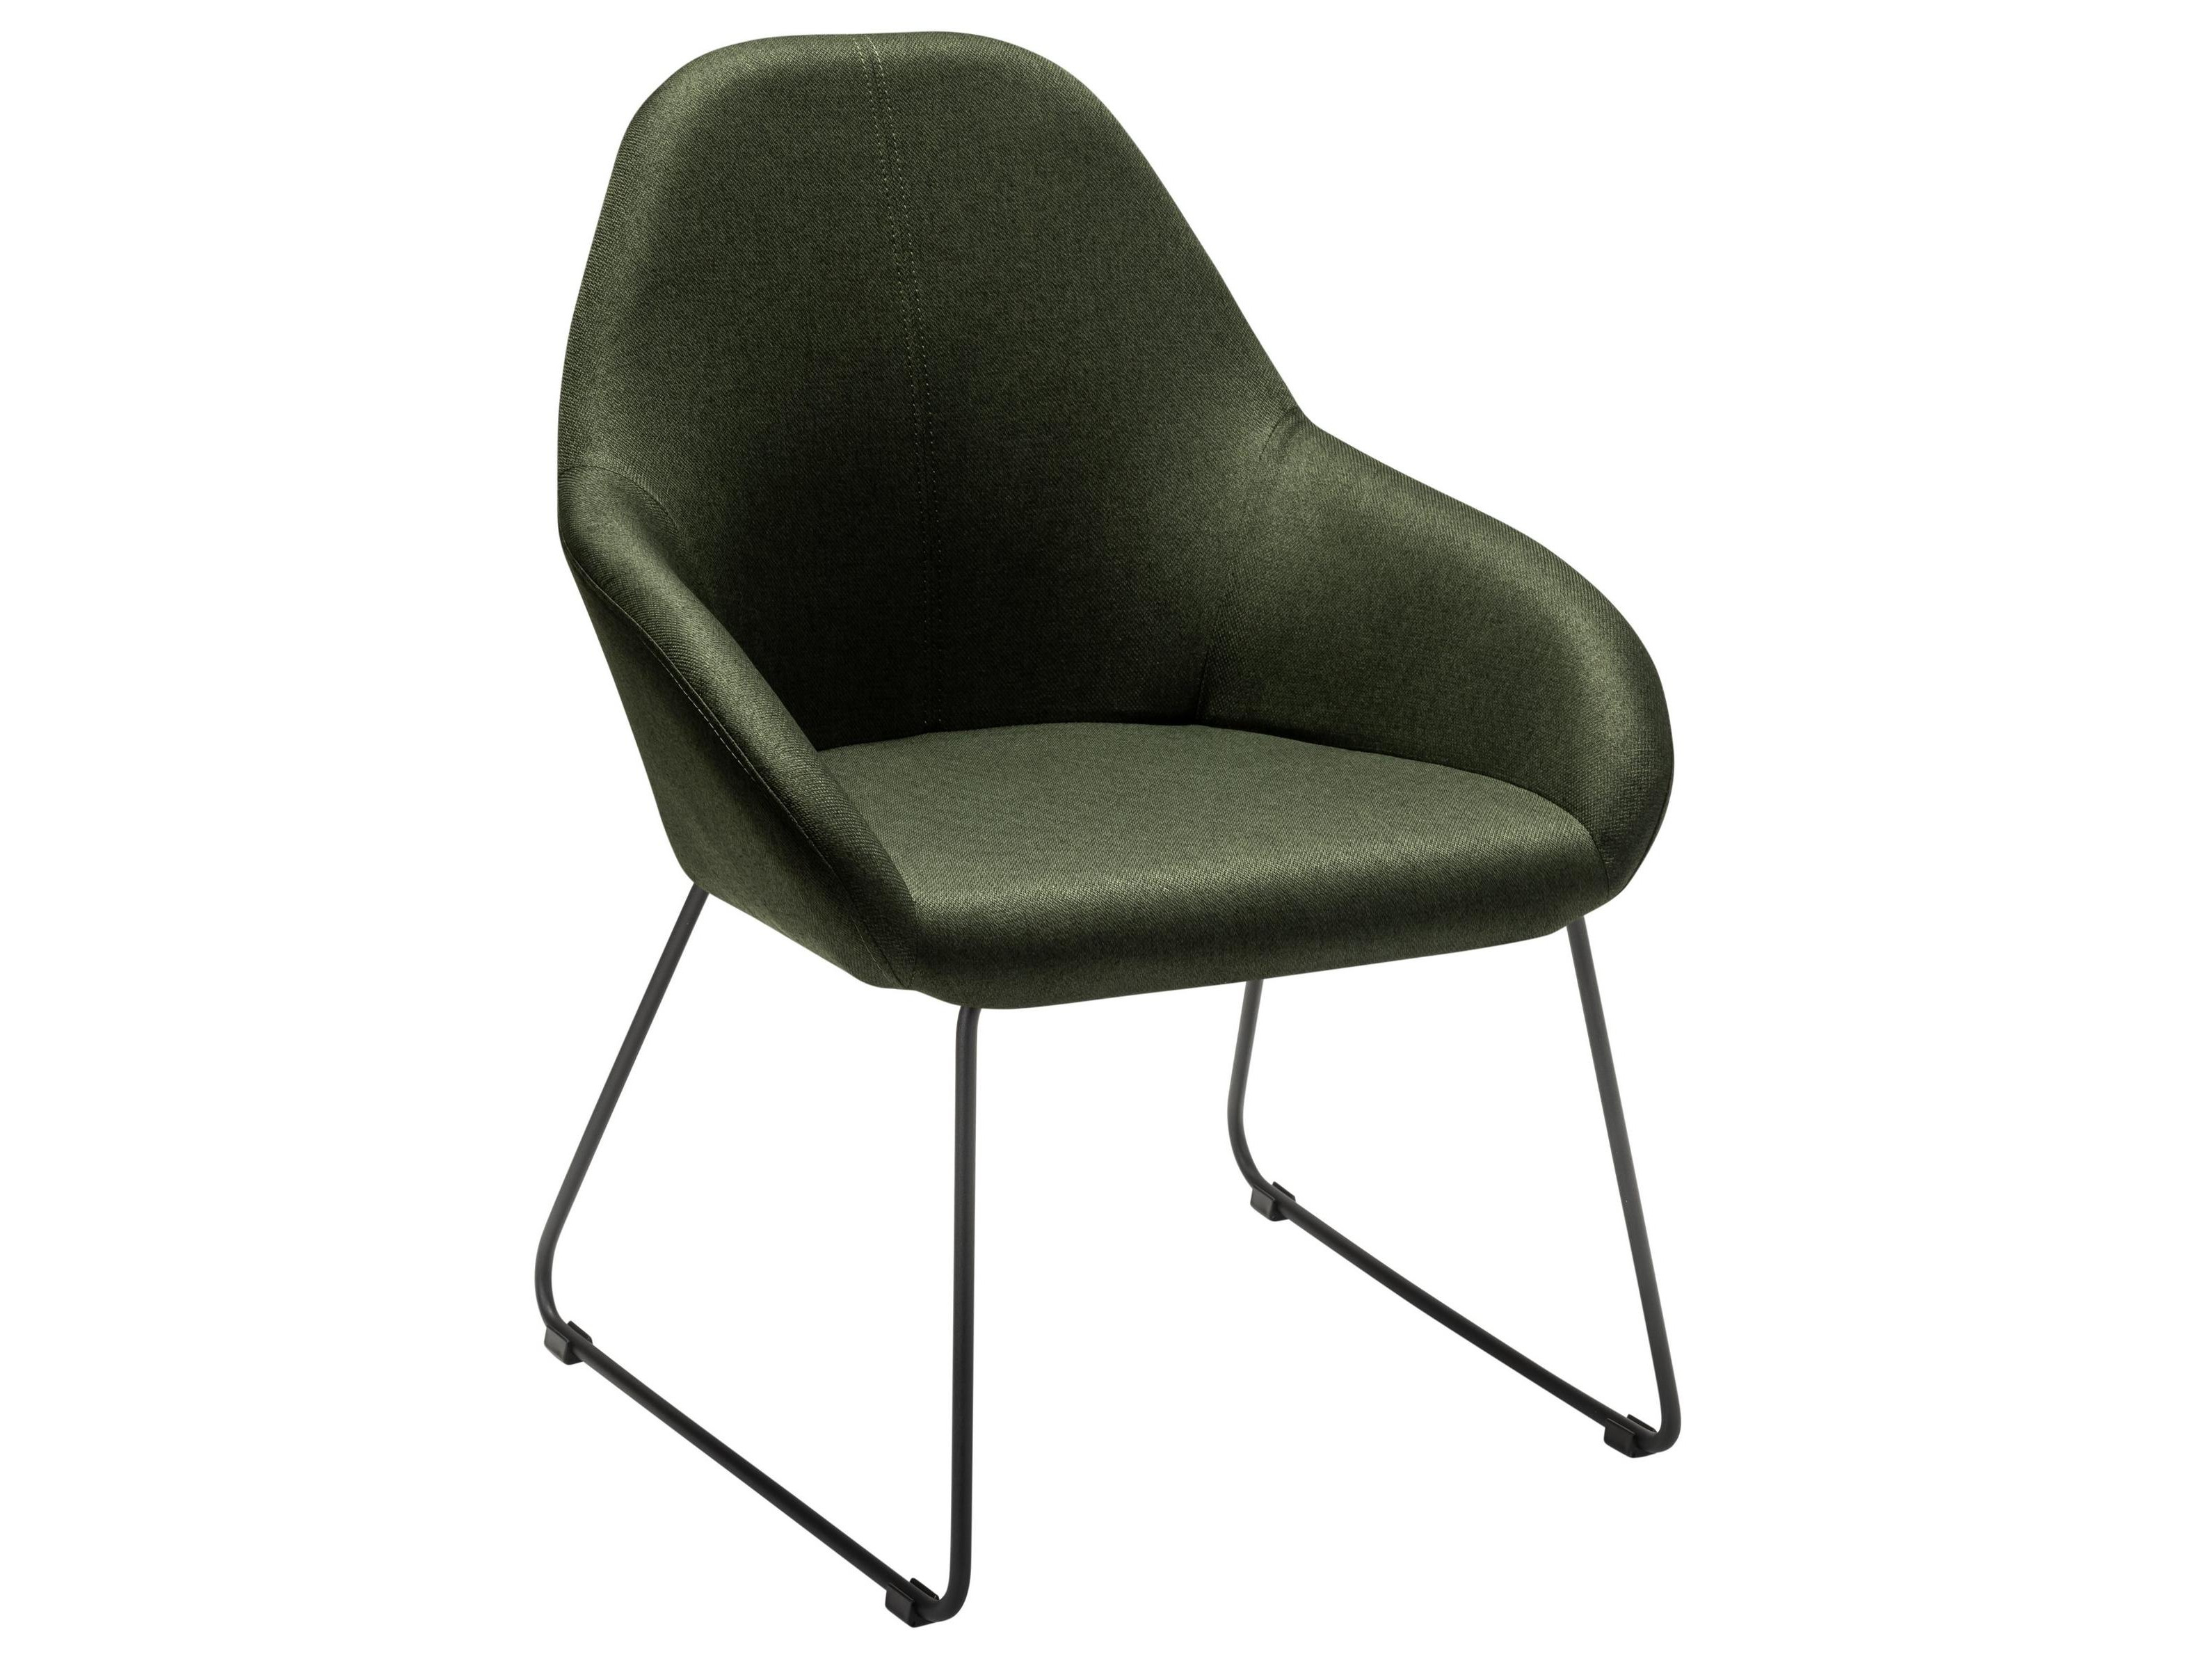 Кресло Kent тёмно-зеленый/Линк Зеленый, Металл кресло барное kent измр черный зеленый сталь